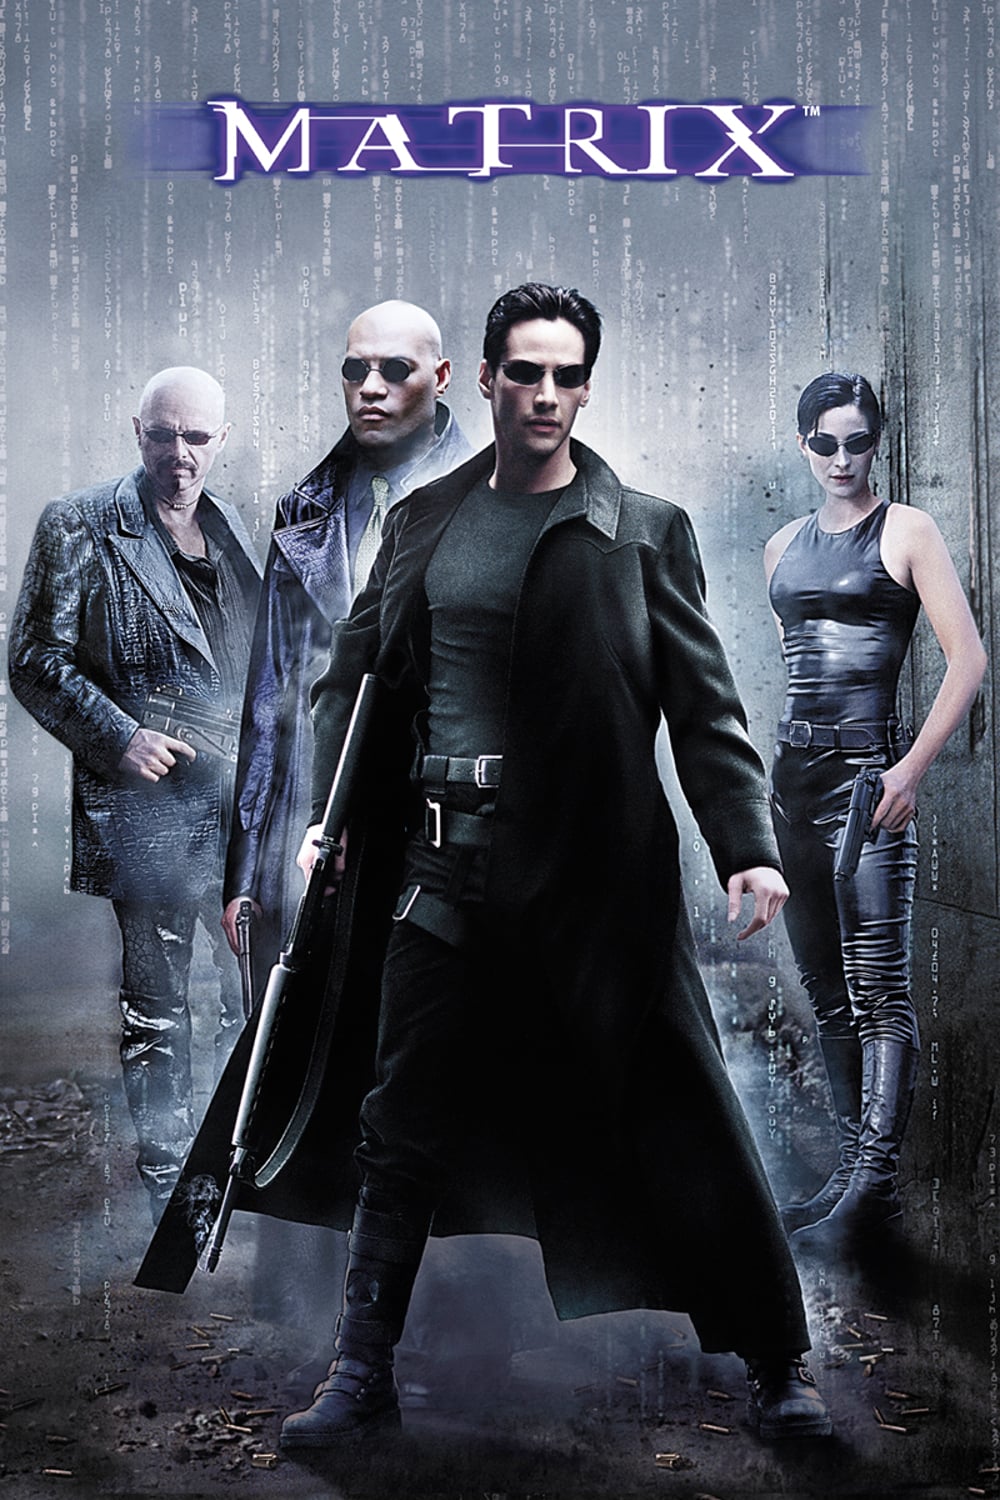 Plakat von "Matrix"